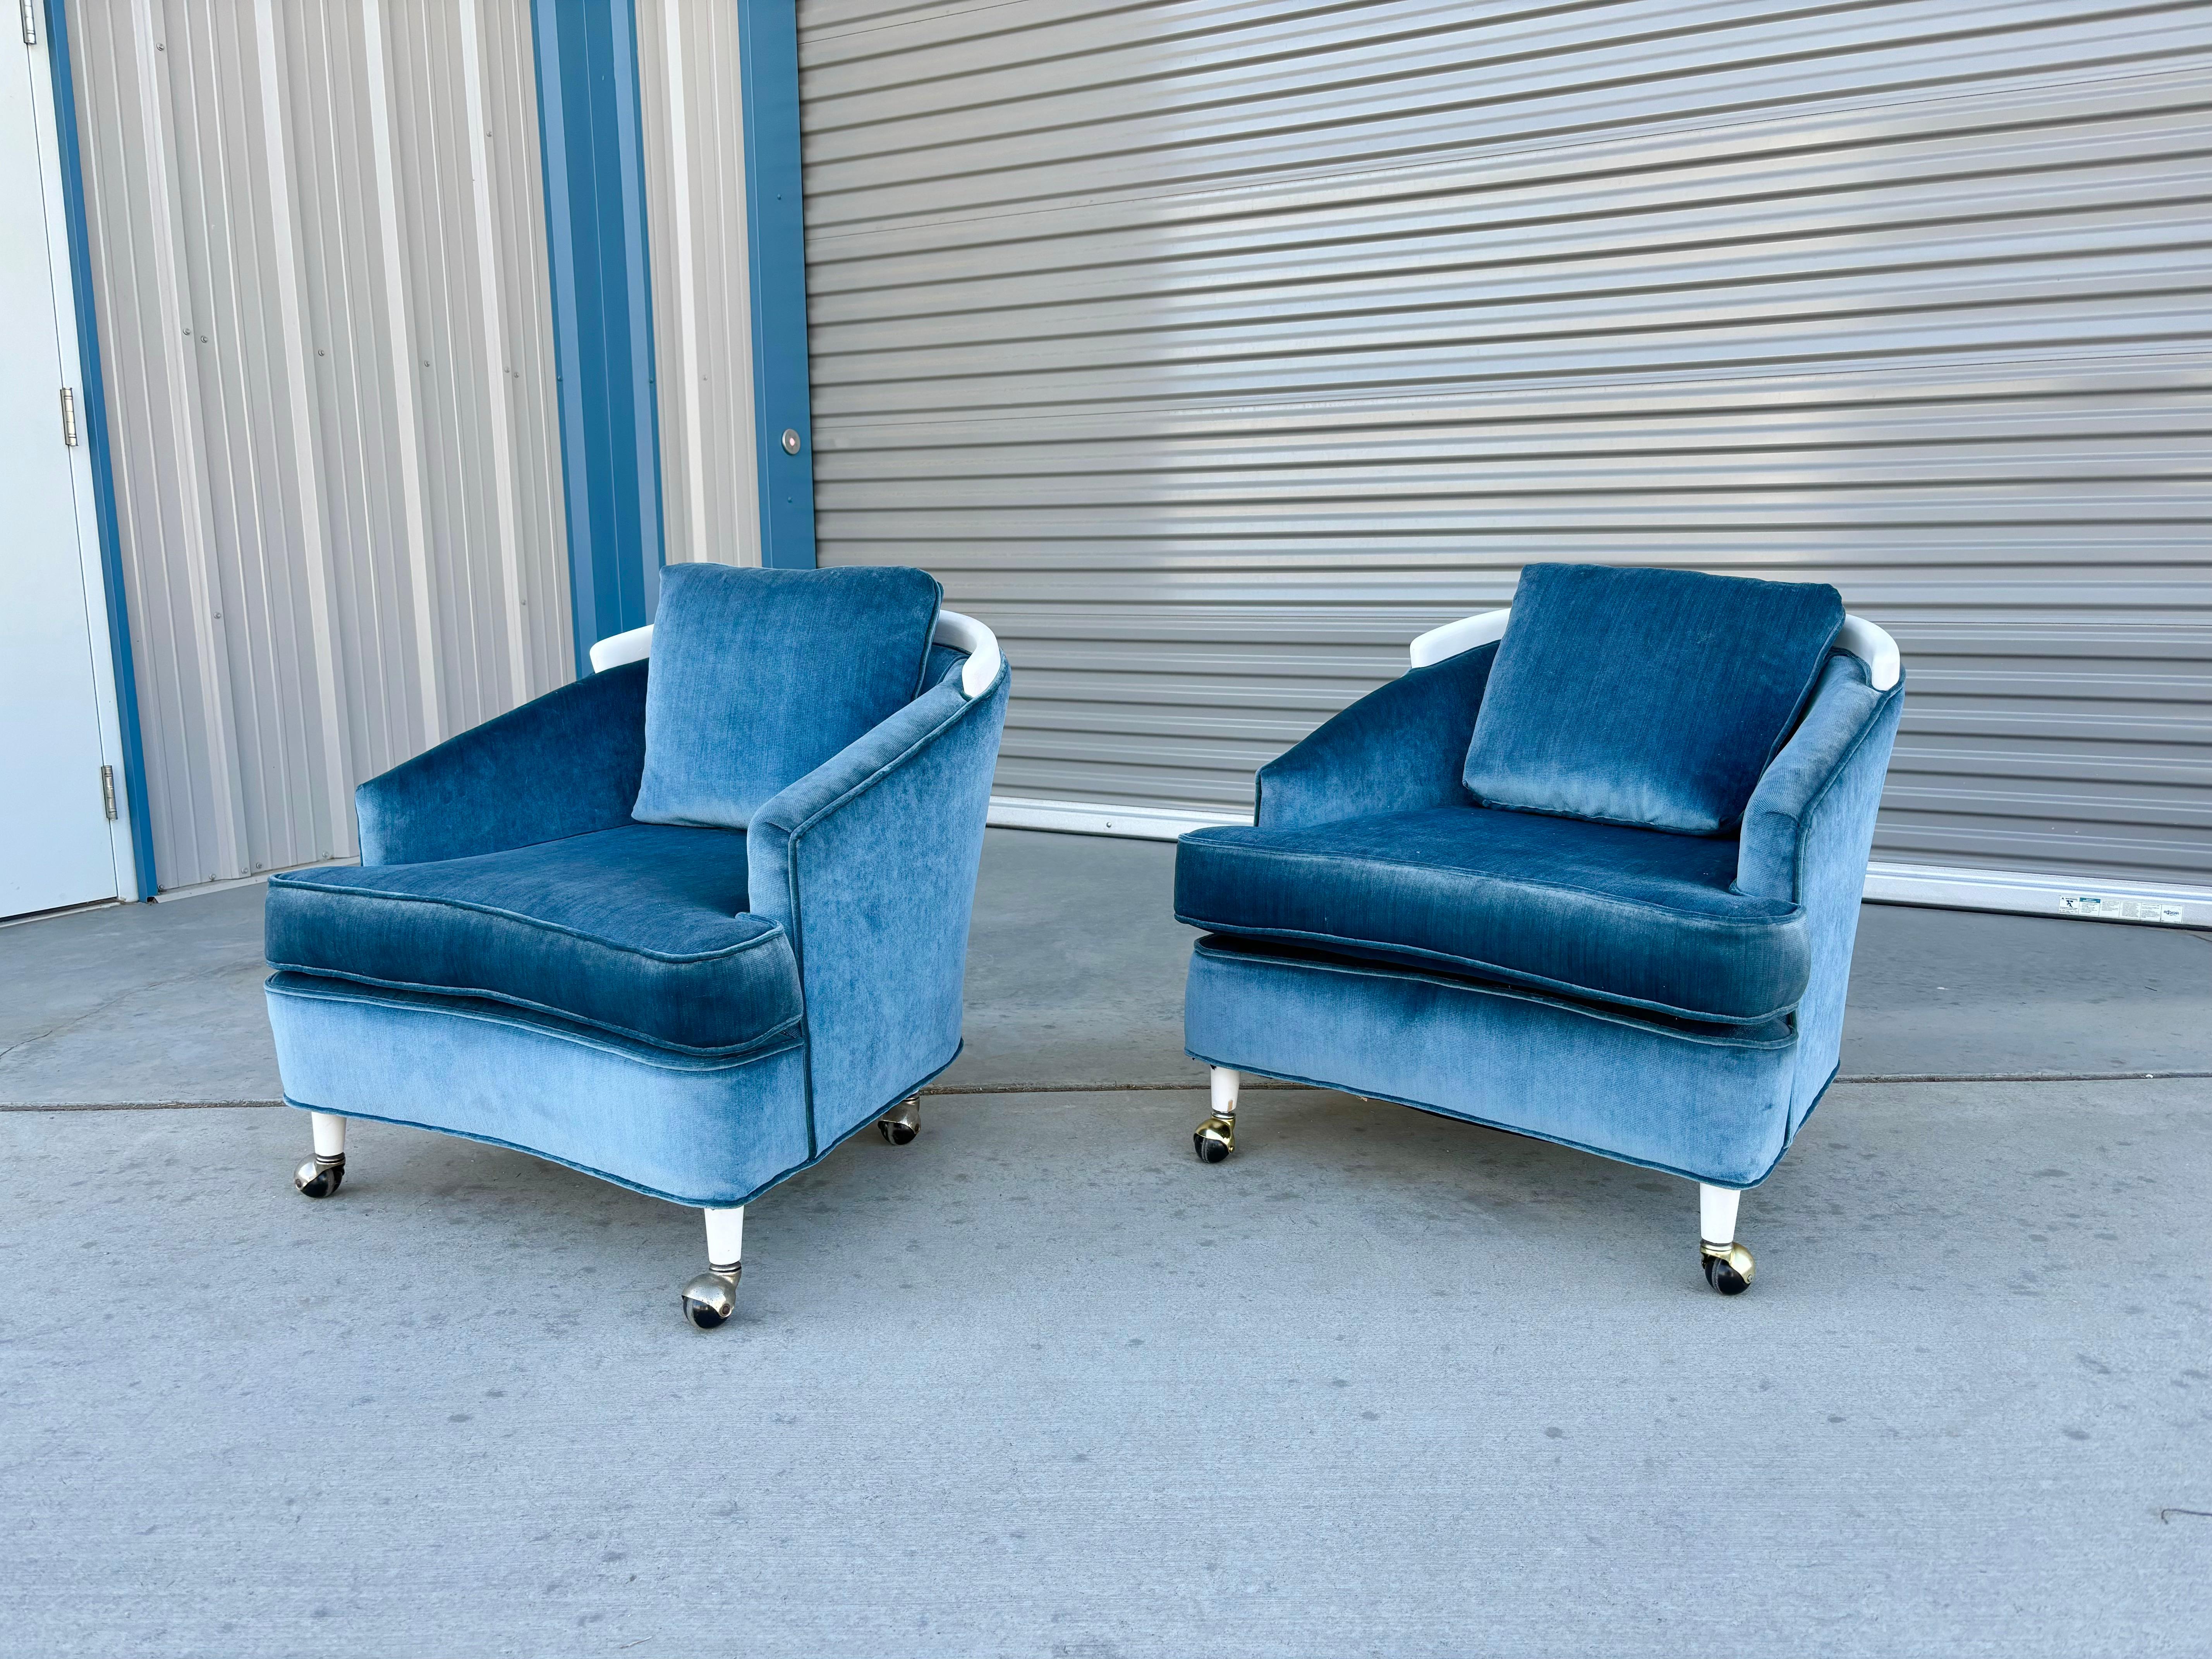 Chaises longues en velours du milieu du siècle, conçues et fabriquées aux États-Unis vers les années 1960. Les chaises sont recouvertes d'un nouveau velours bleu, à la fois confortable et esthétique. Ce qui distingue ces chaises, c'est l'élégante